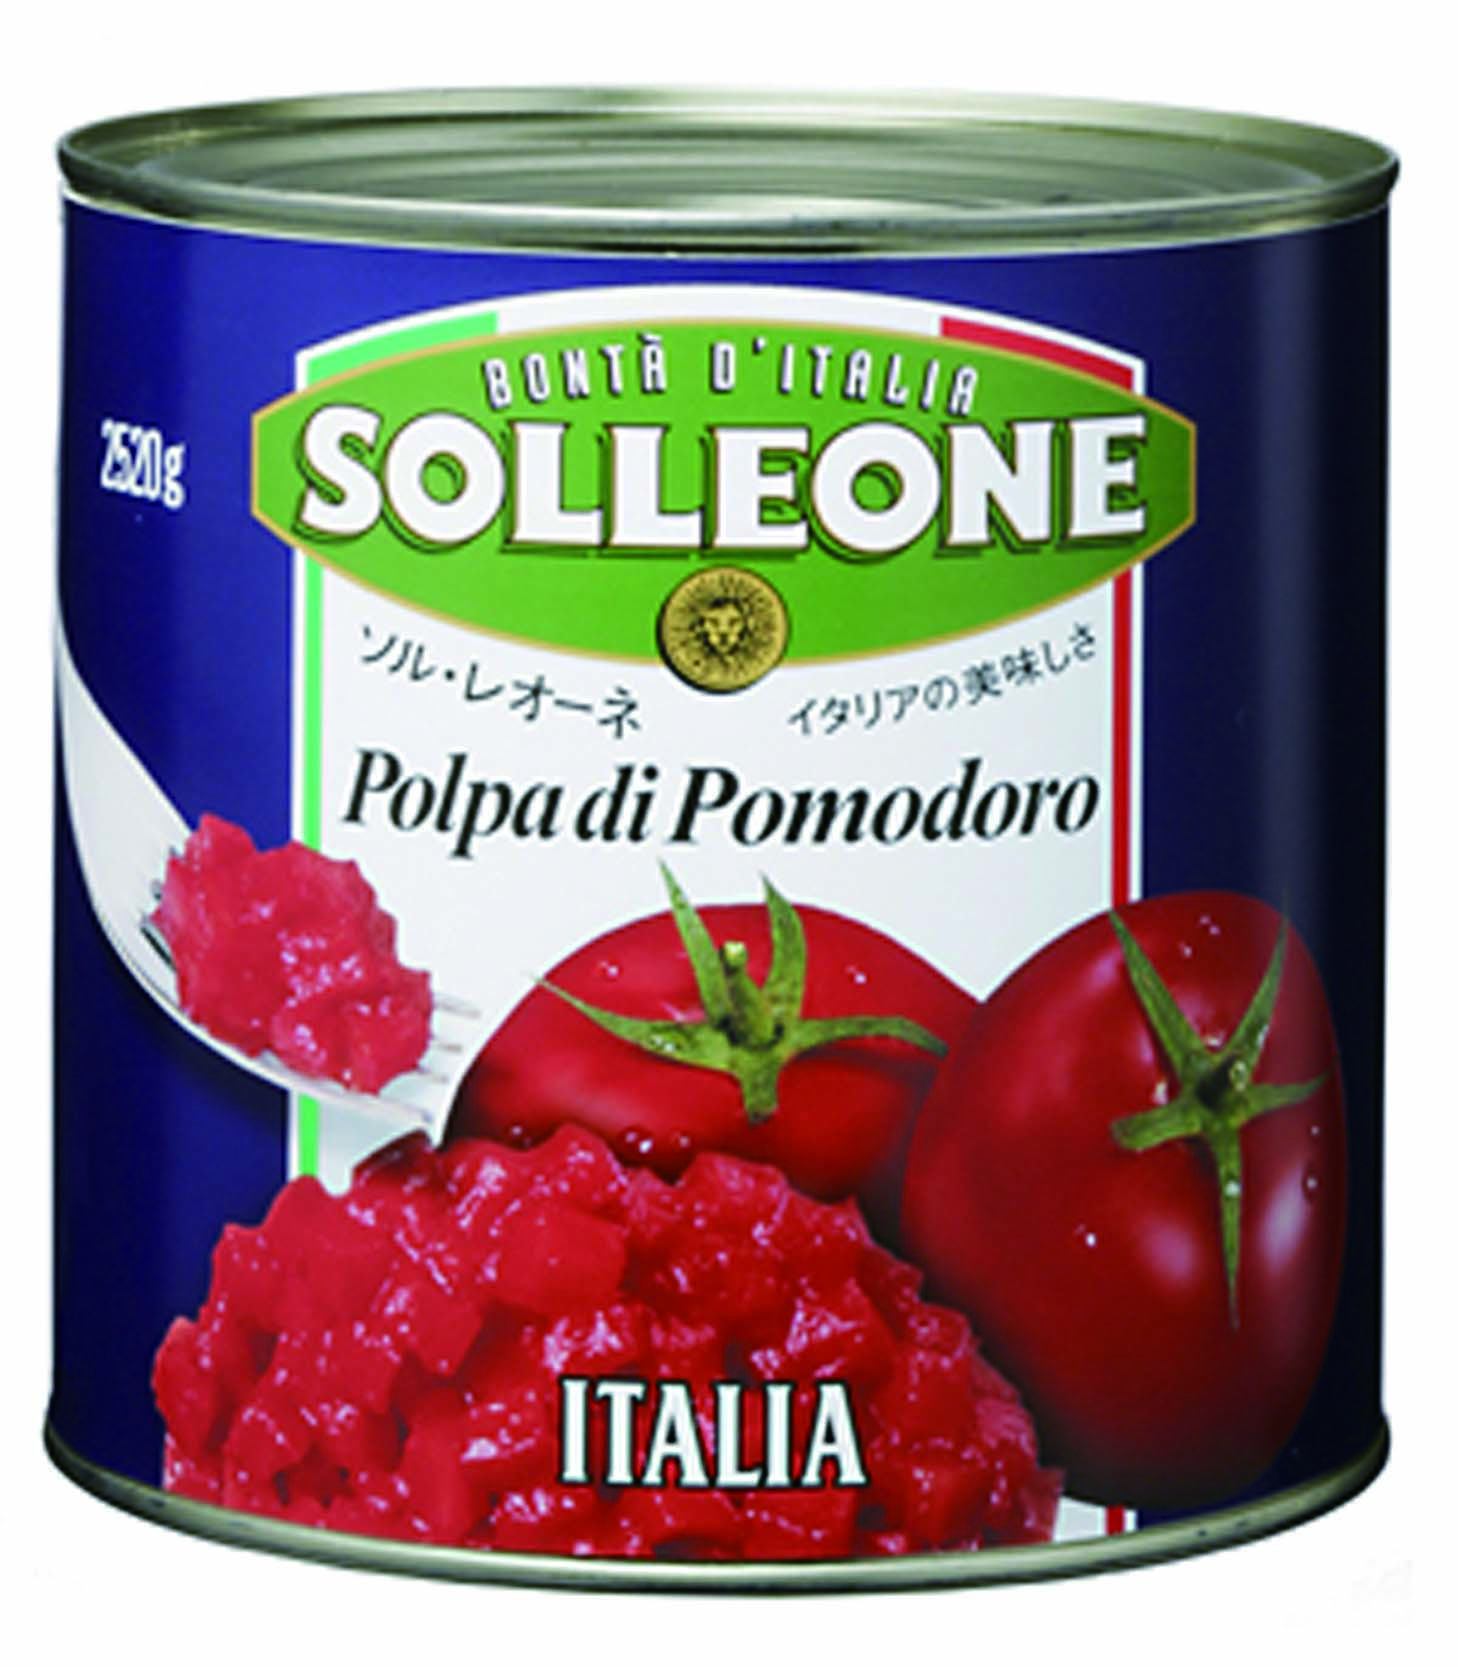 【商品番号 650270 に変更となりました】日欧商事)ソル・レオーネ ダイストマト 2.52kg